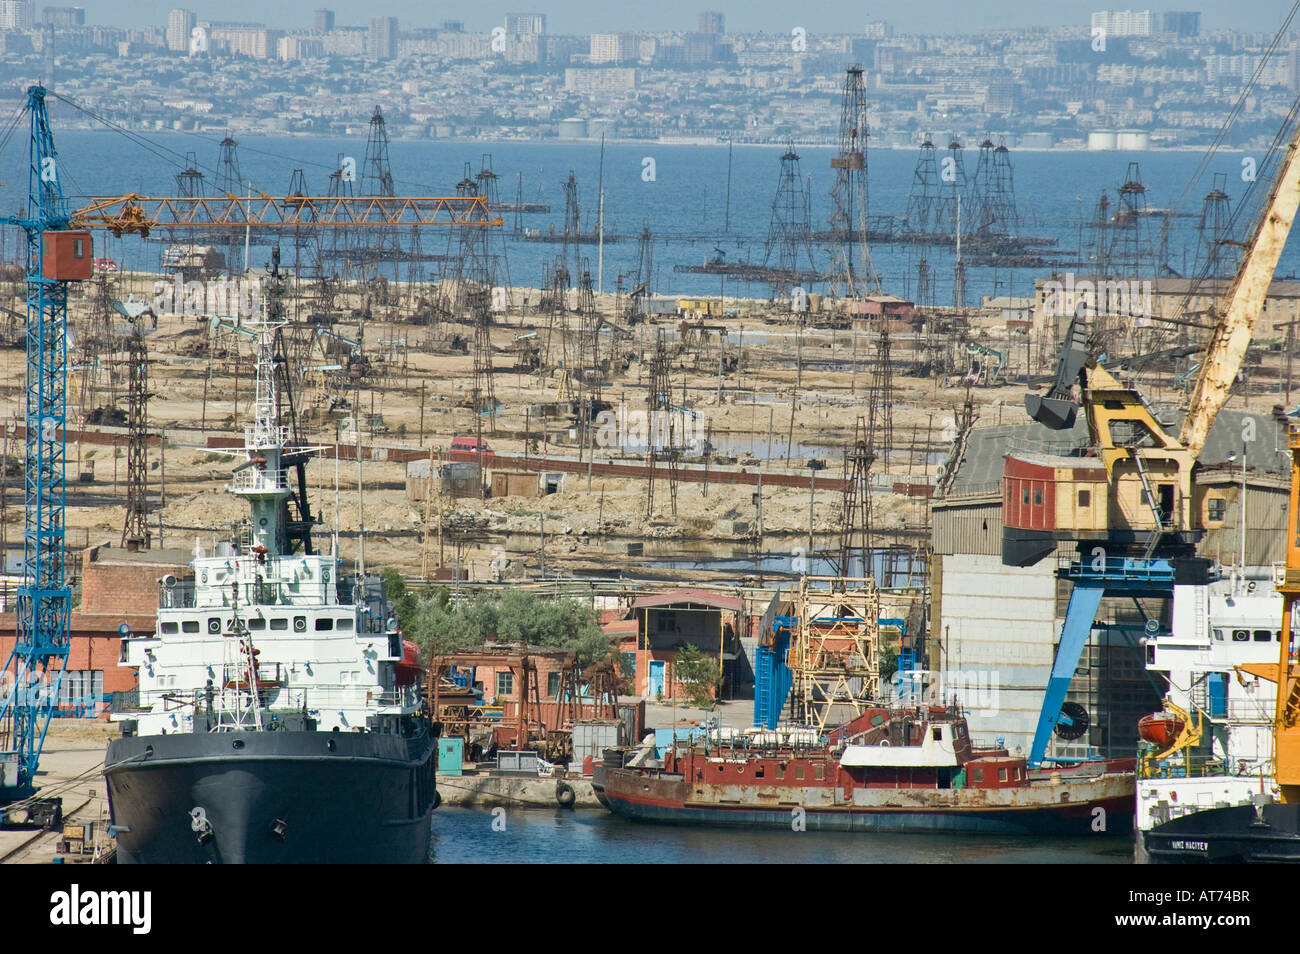 The oilfields in Baku, Azerbaijan Stock Photo